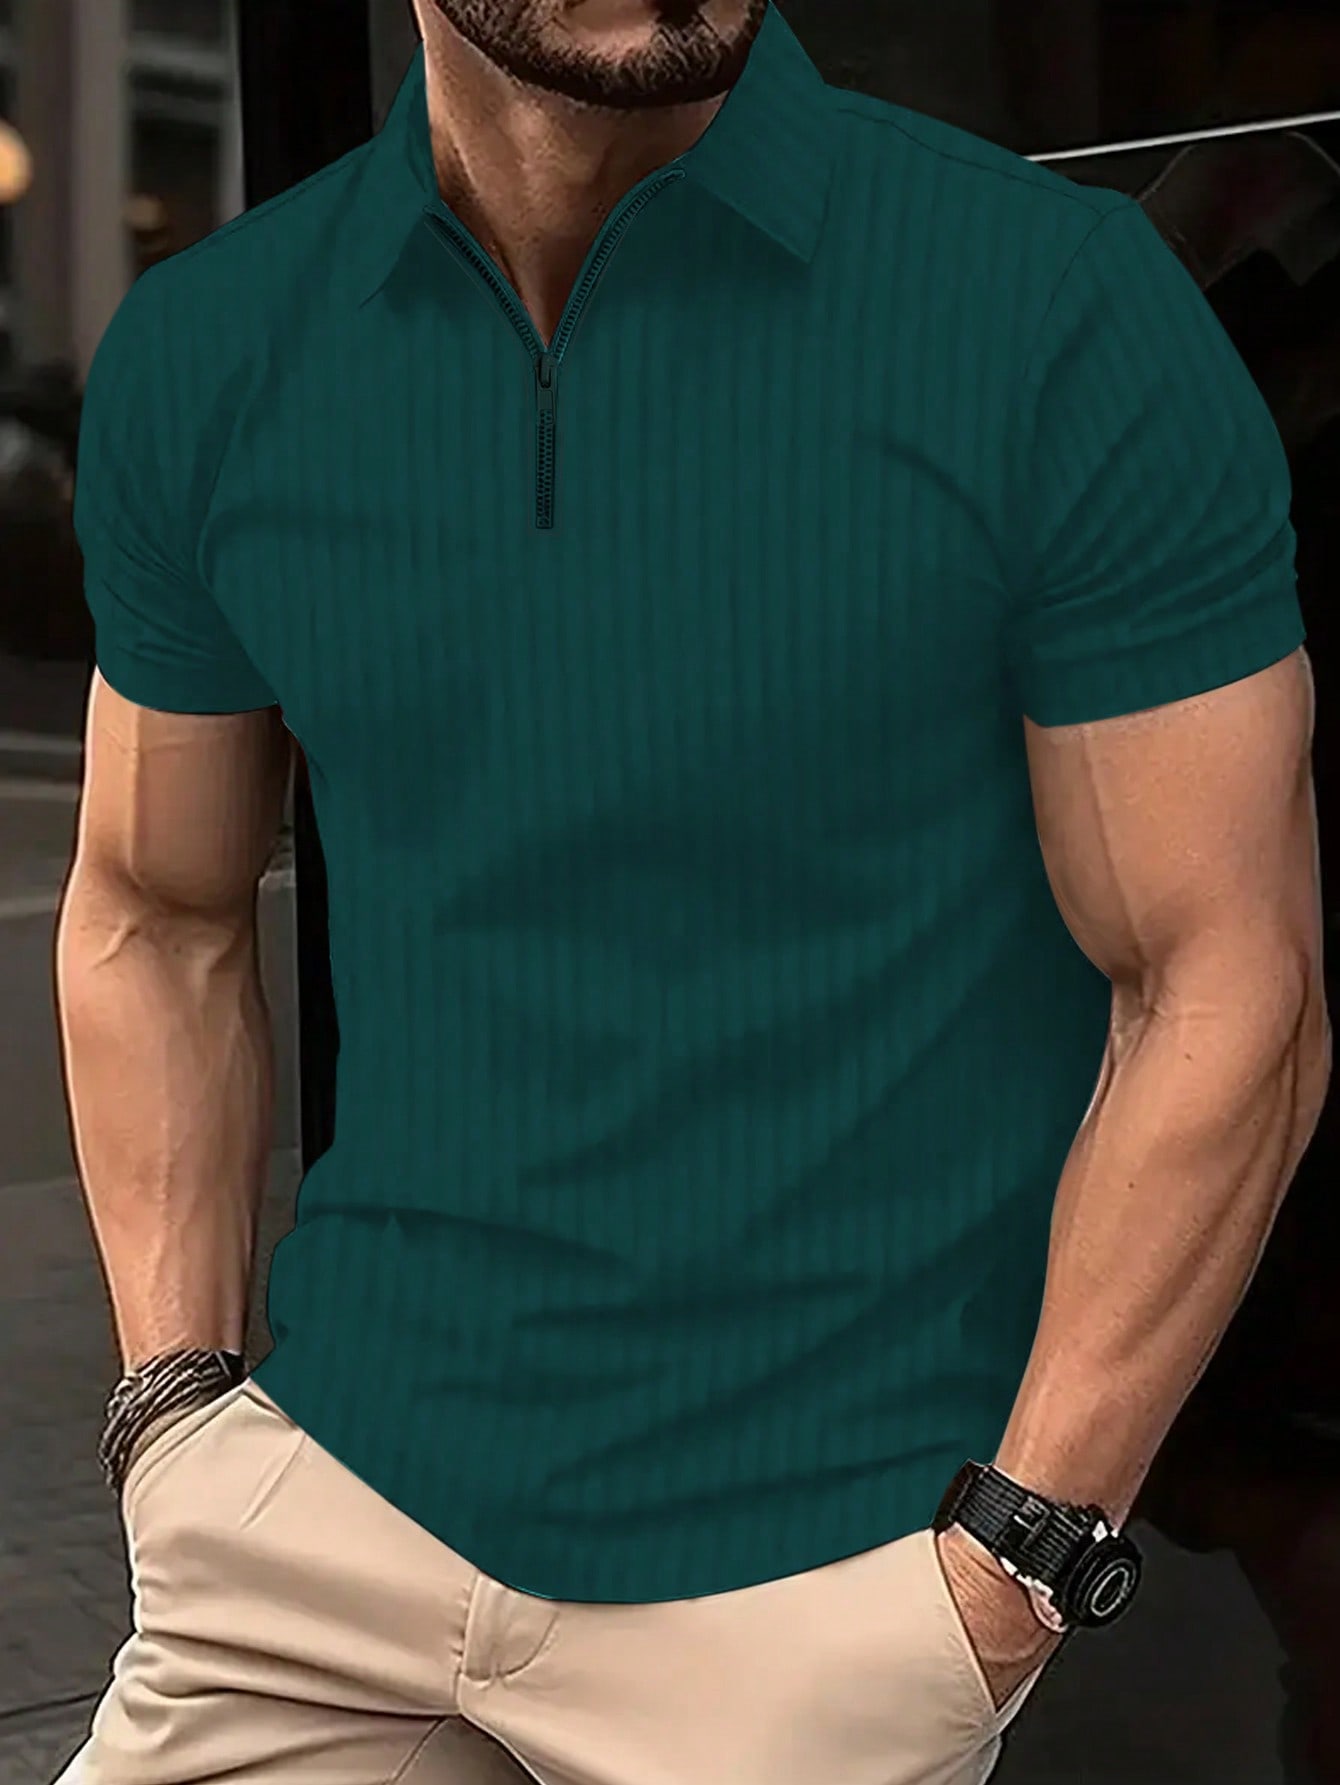 Мужская полосатая рубашка-поло с молнией до половины и короткими рукавами Manfinity Homme больших размеров, темно-зеленый